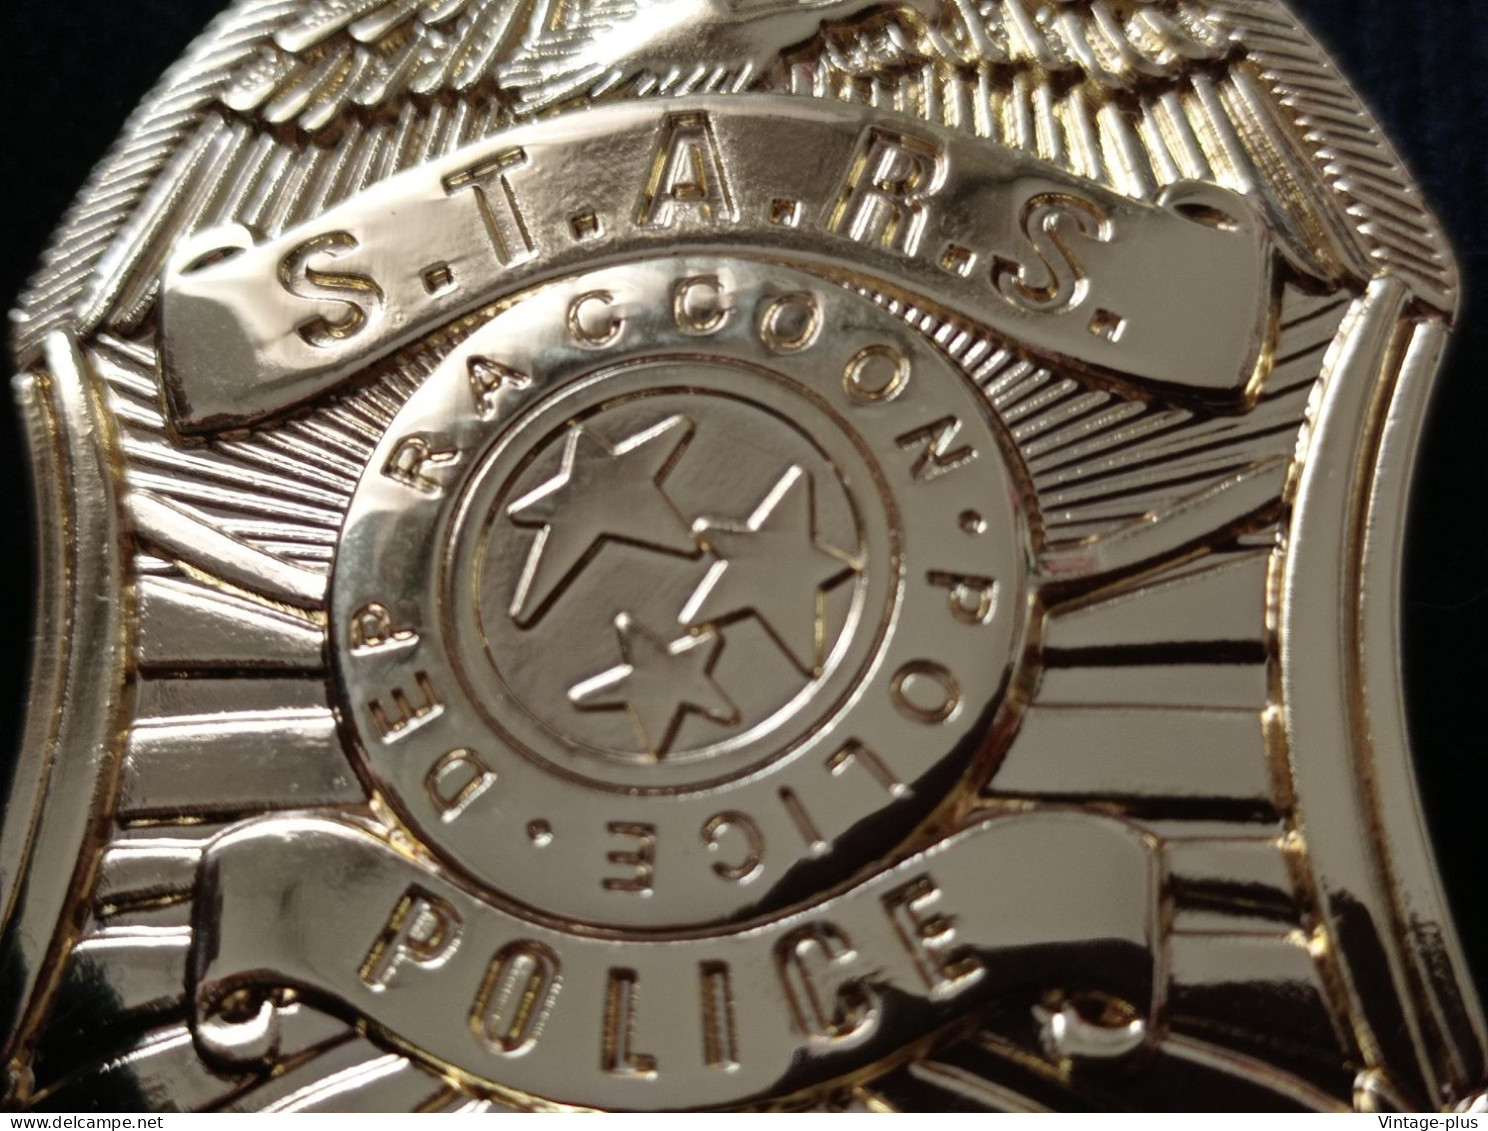 US POLICE BADGE POLIZIA DISTINTIVO SPECIAL AGENT STARS SPECIAL TACTICS AND RESCUE SERVICE - USA - MARIN'S CORP - Polizia